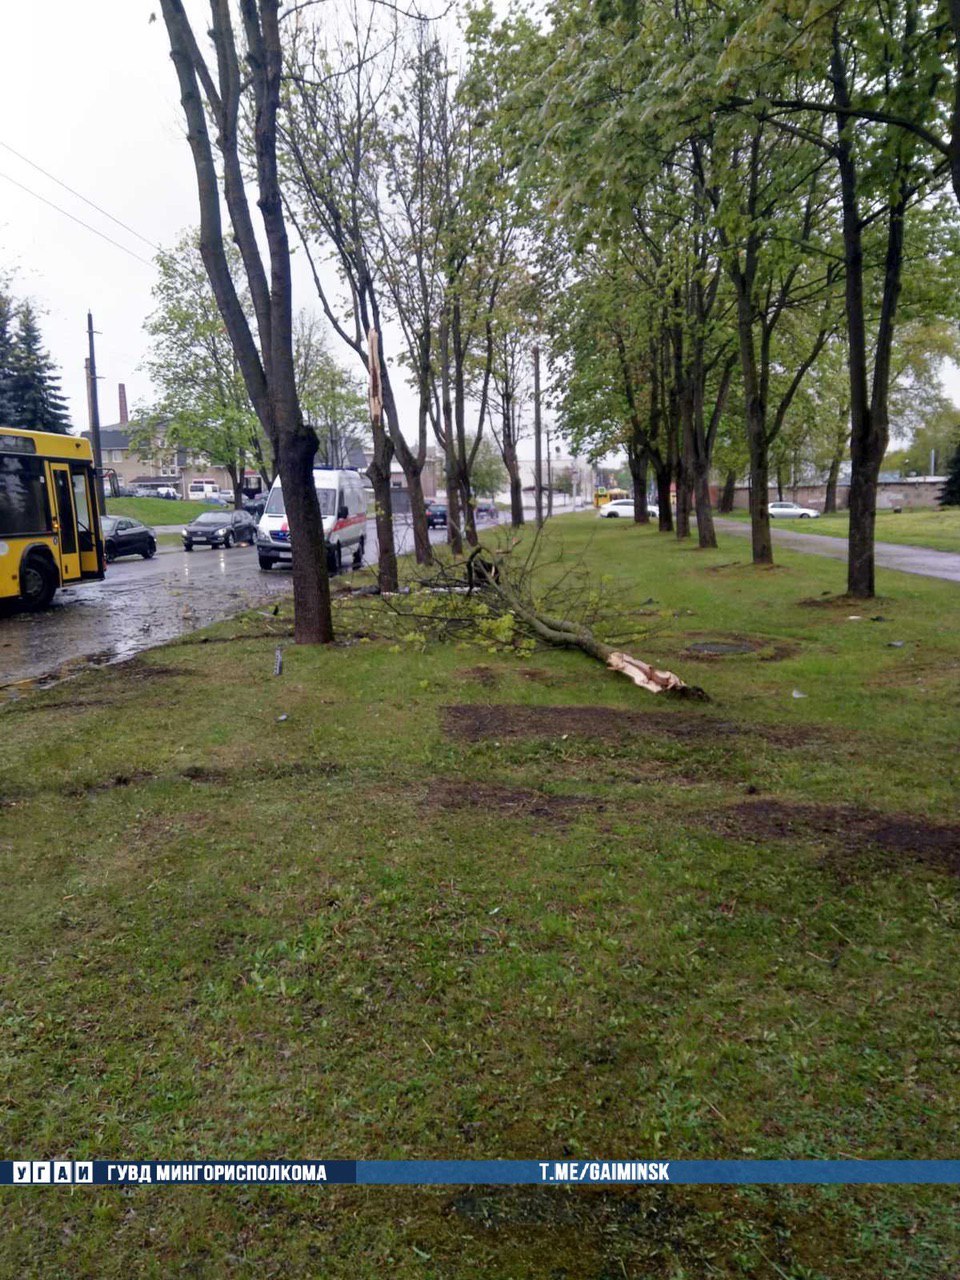 Toyota в Минске дважды врезалась в дерево и автобус